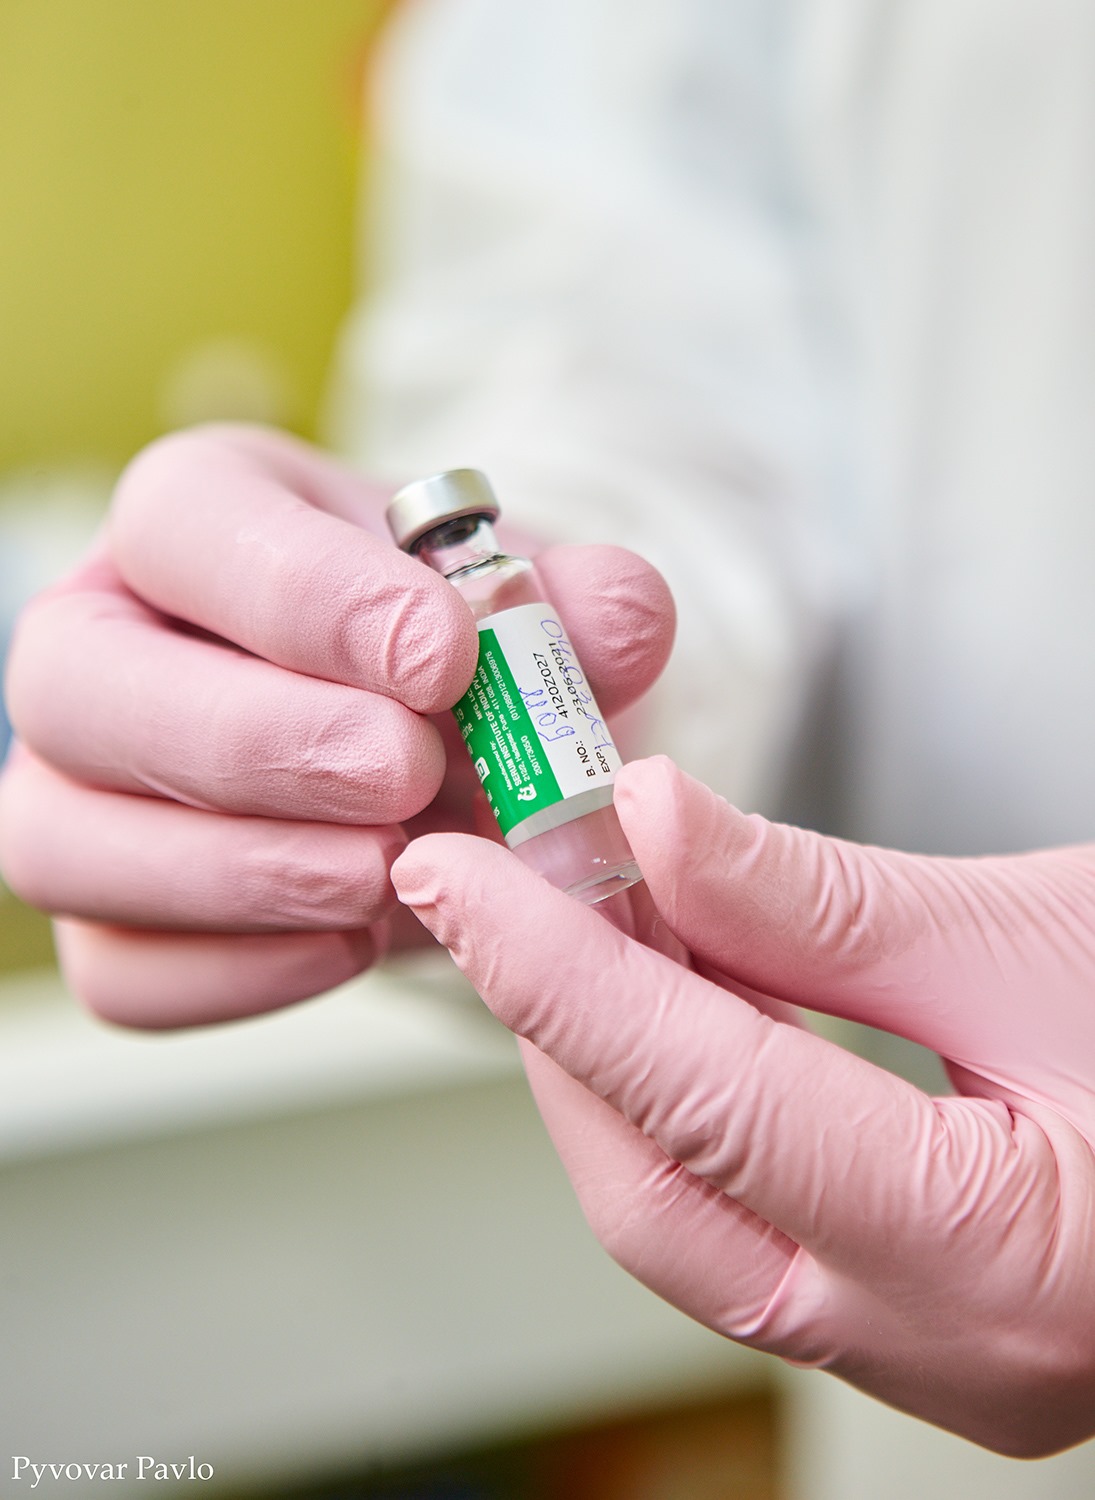 Понад 32 тисячі прикарпатців вакцинувалися від COVID-19. Другу дозу отримали більше 1300 осіб